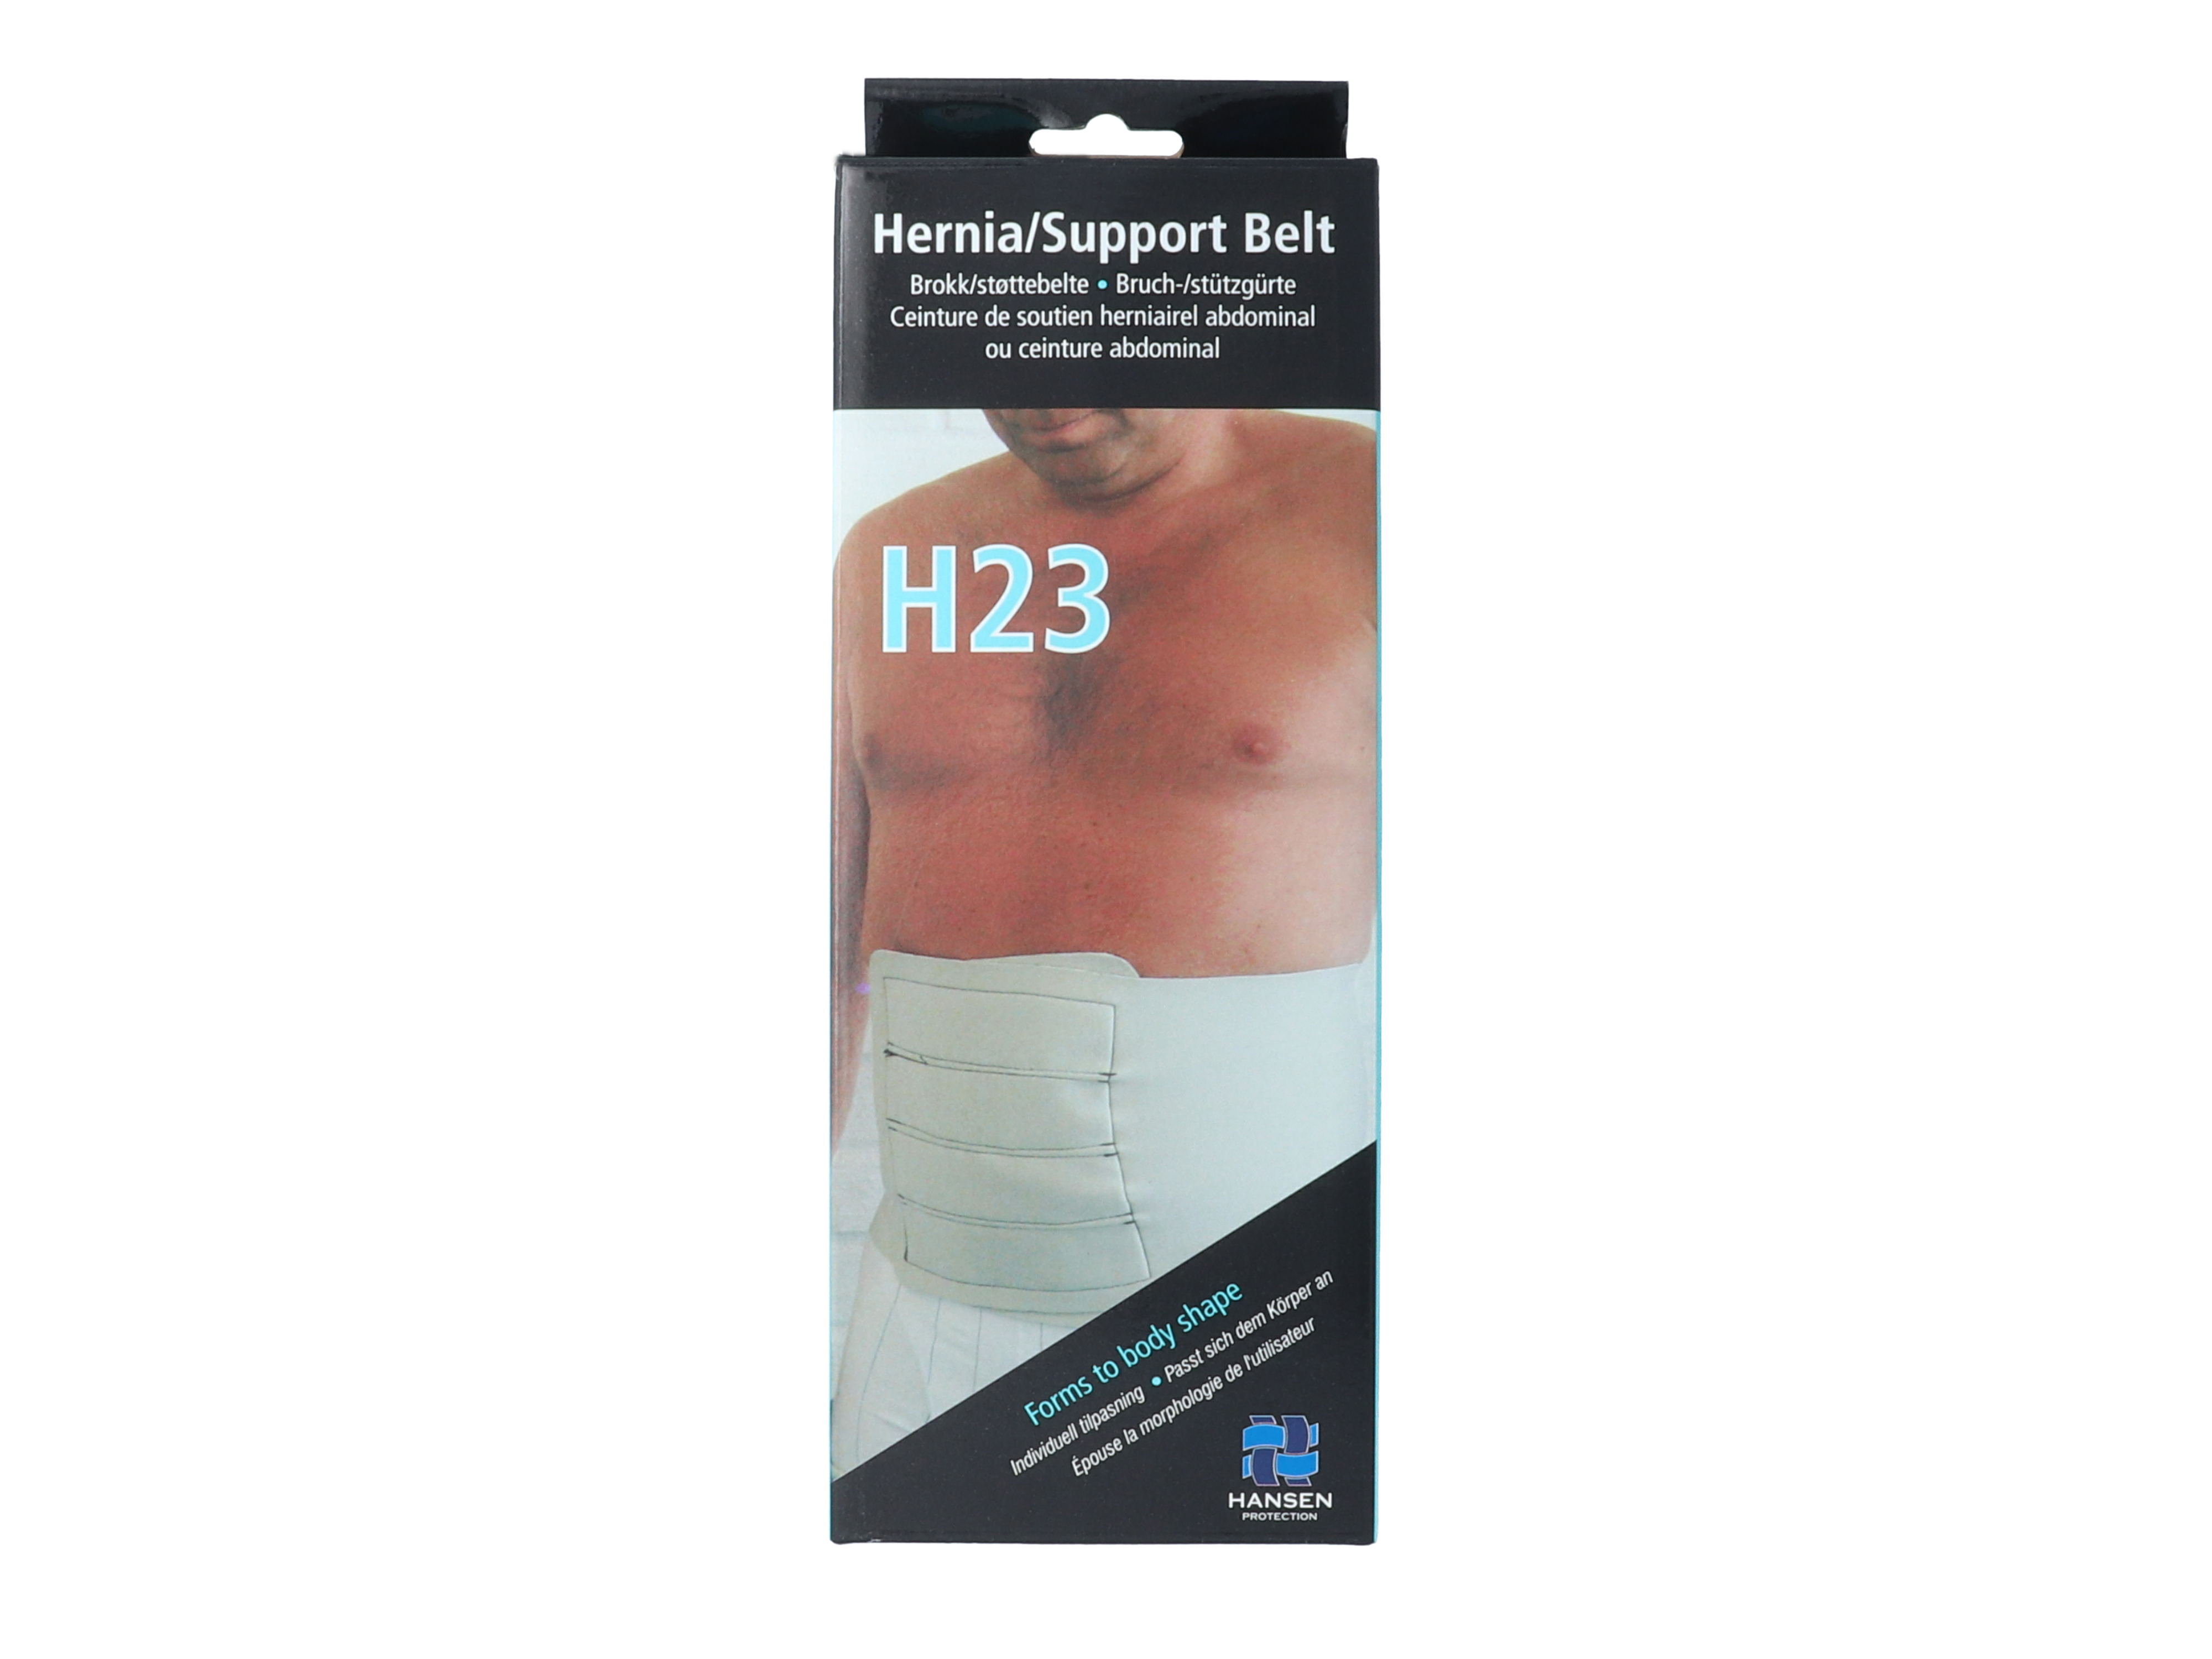 Hansen Protection HH Brokk/støttebelte H23, str M, omkrets 90 cm, 1 stk.